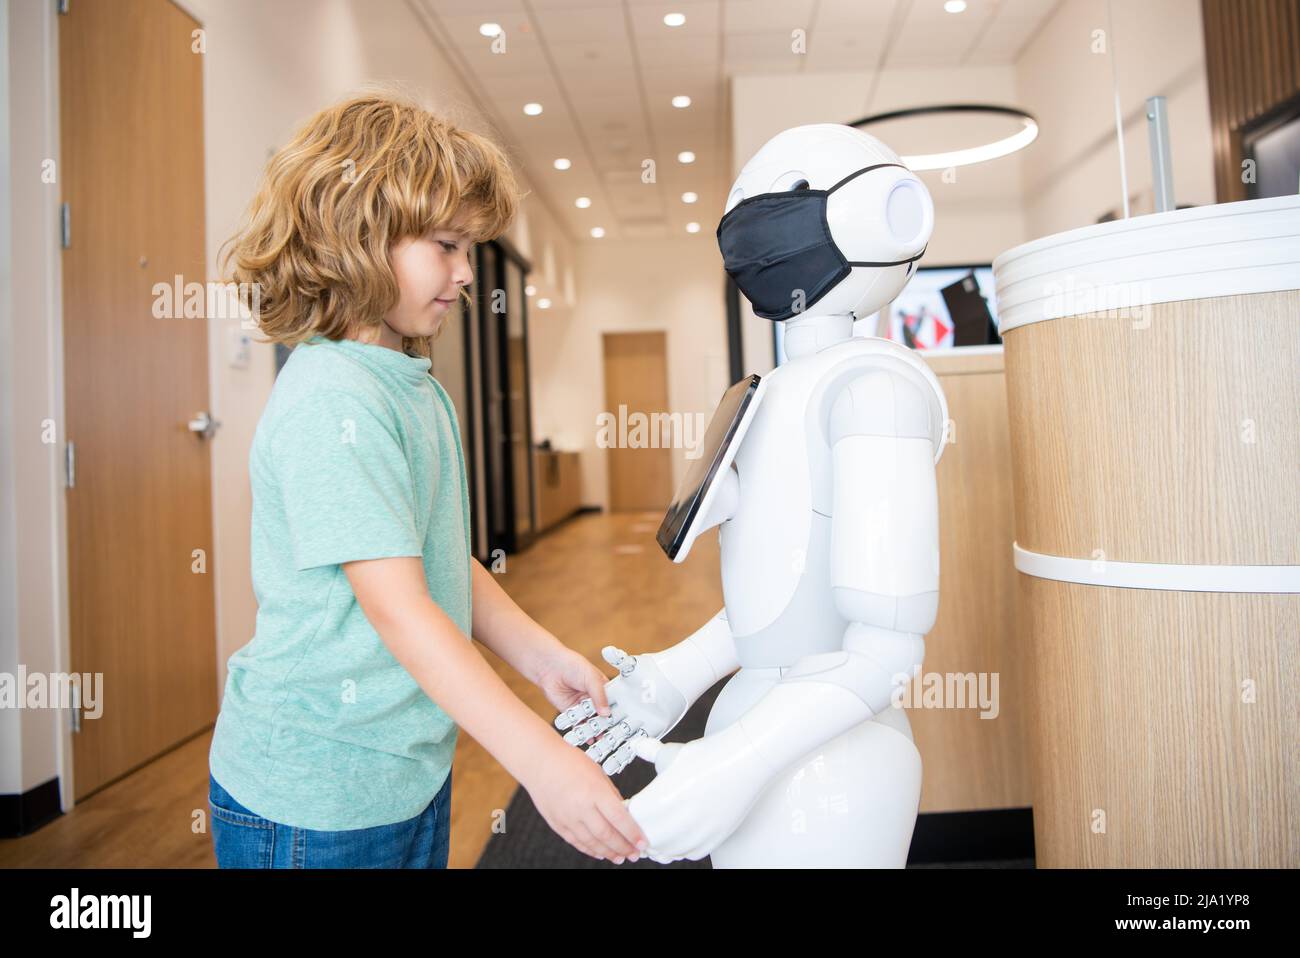 un petit garçon interagit avec le robot comme technologie innovante, communication Banque D'Images